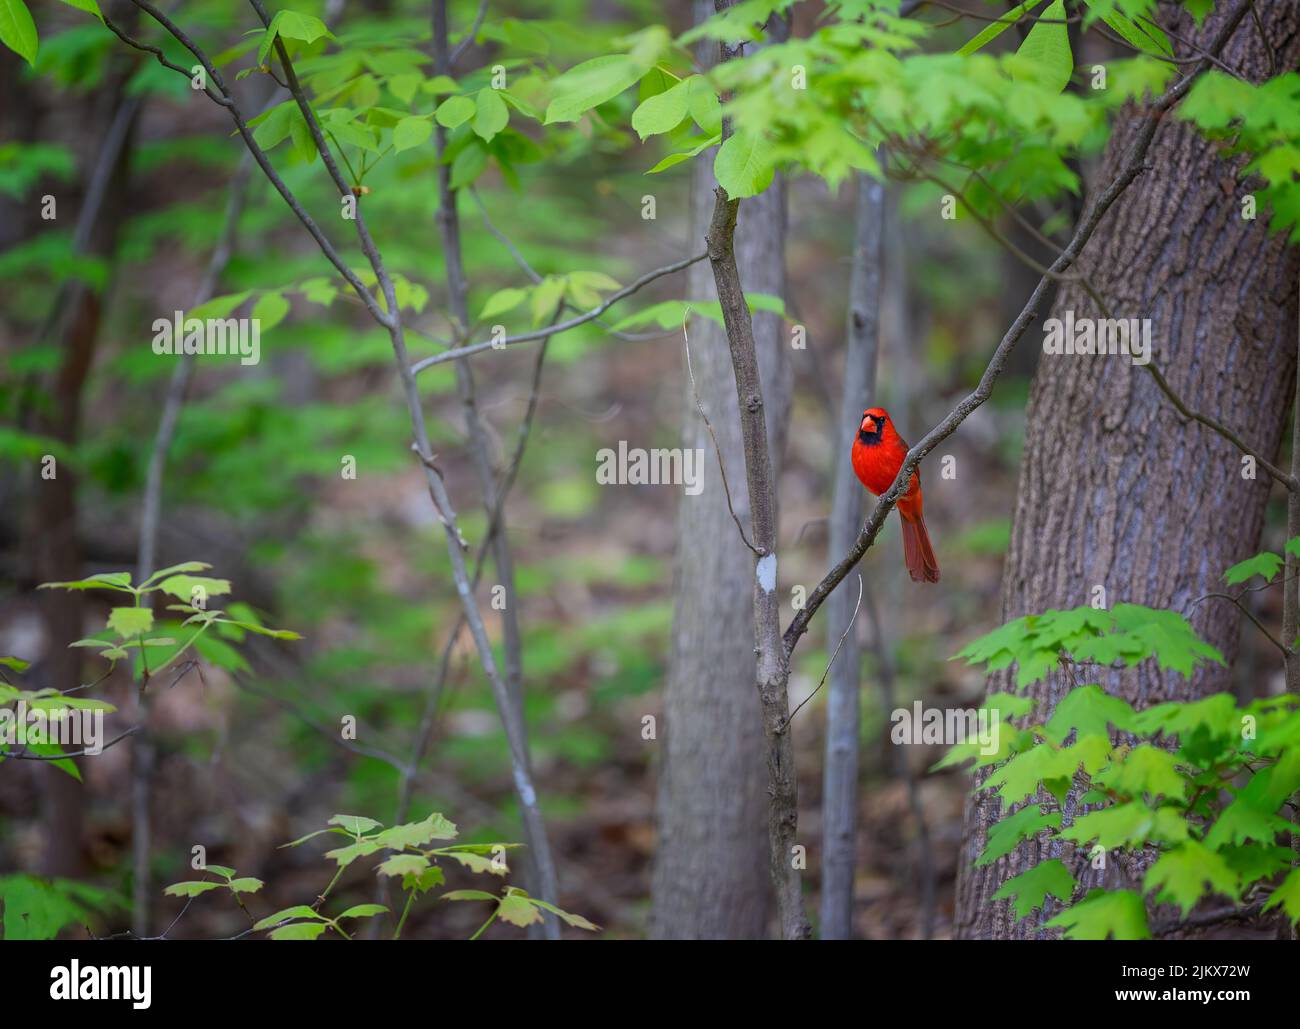 Brillante Red Northern Cardinal se sienta en una rama de árbol en una zona boscosa. Foto de stock